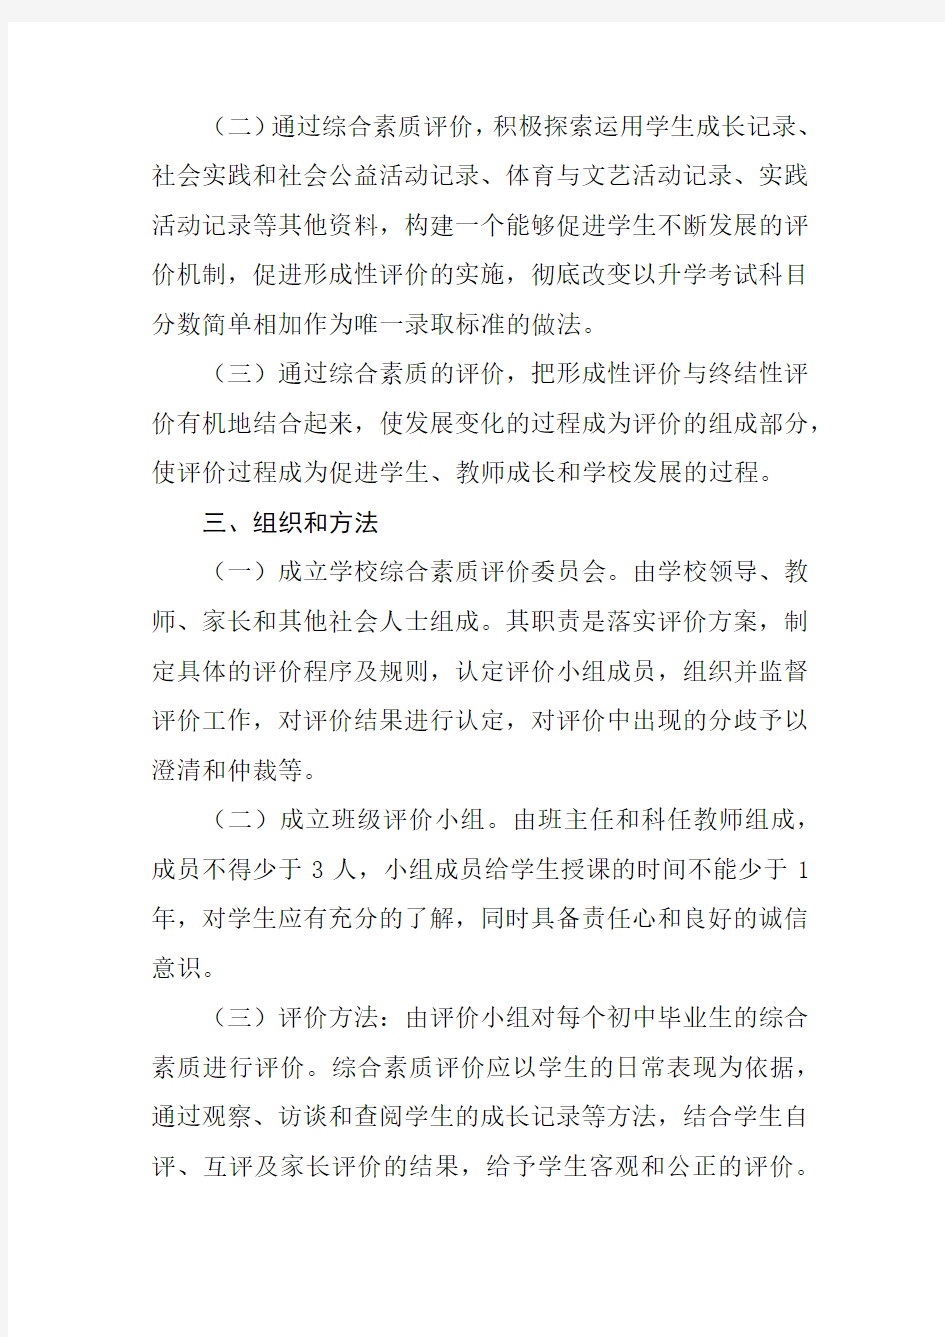 海南省初中学生综合素质评价实施方案(2020年修订)